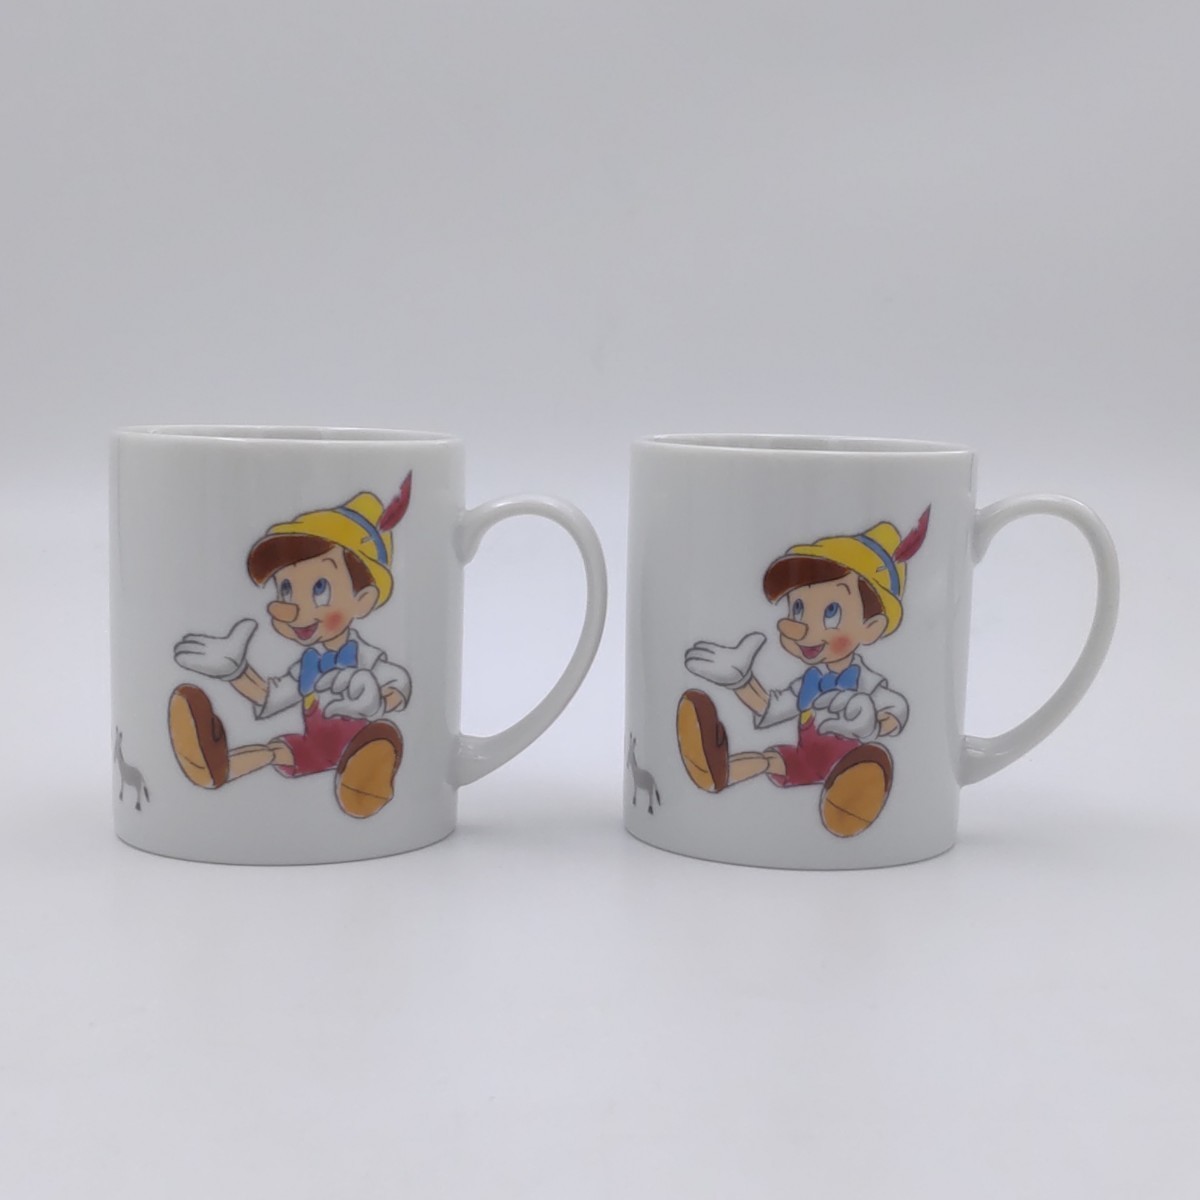 ディズニー ピノキオ マグカップ 2個 Walt Disney Pinocchio mug Sony Creative Products 新品 未使用 訳あり含む お買い得 箱なし_画像1